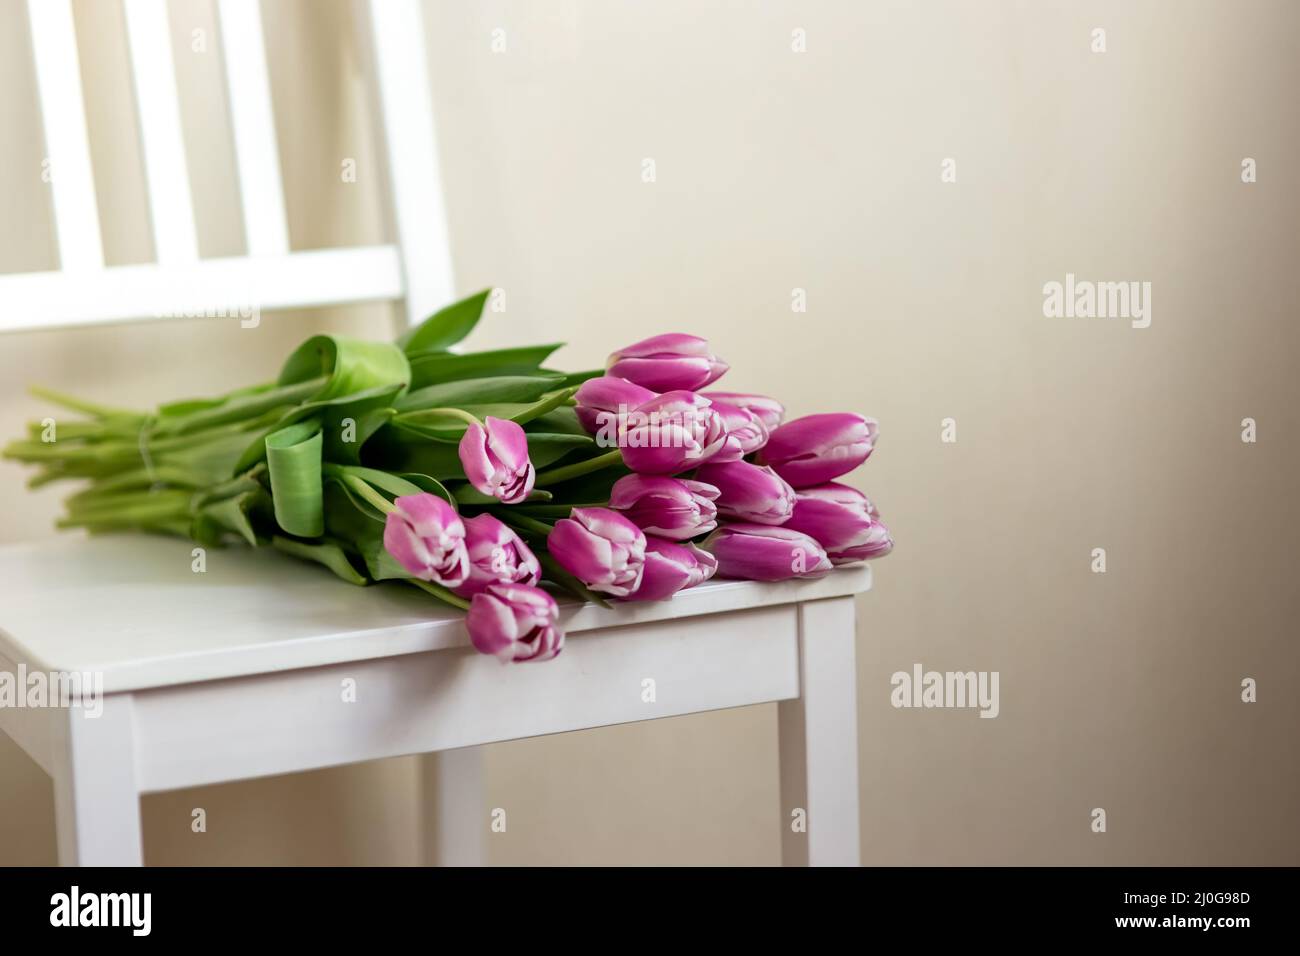 Los tulipanes púrpura se encuentran en una silla blanca, en una habitación, cerca de una pared clara. Foto de stock